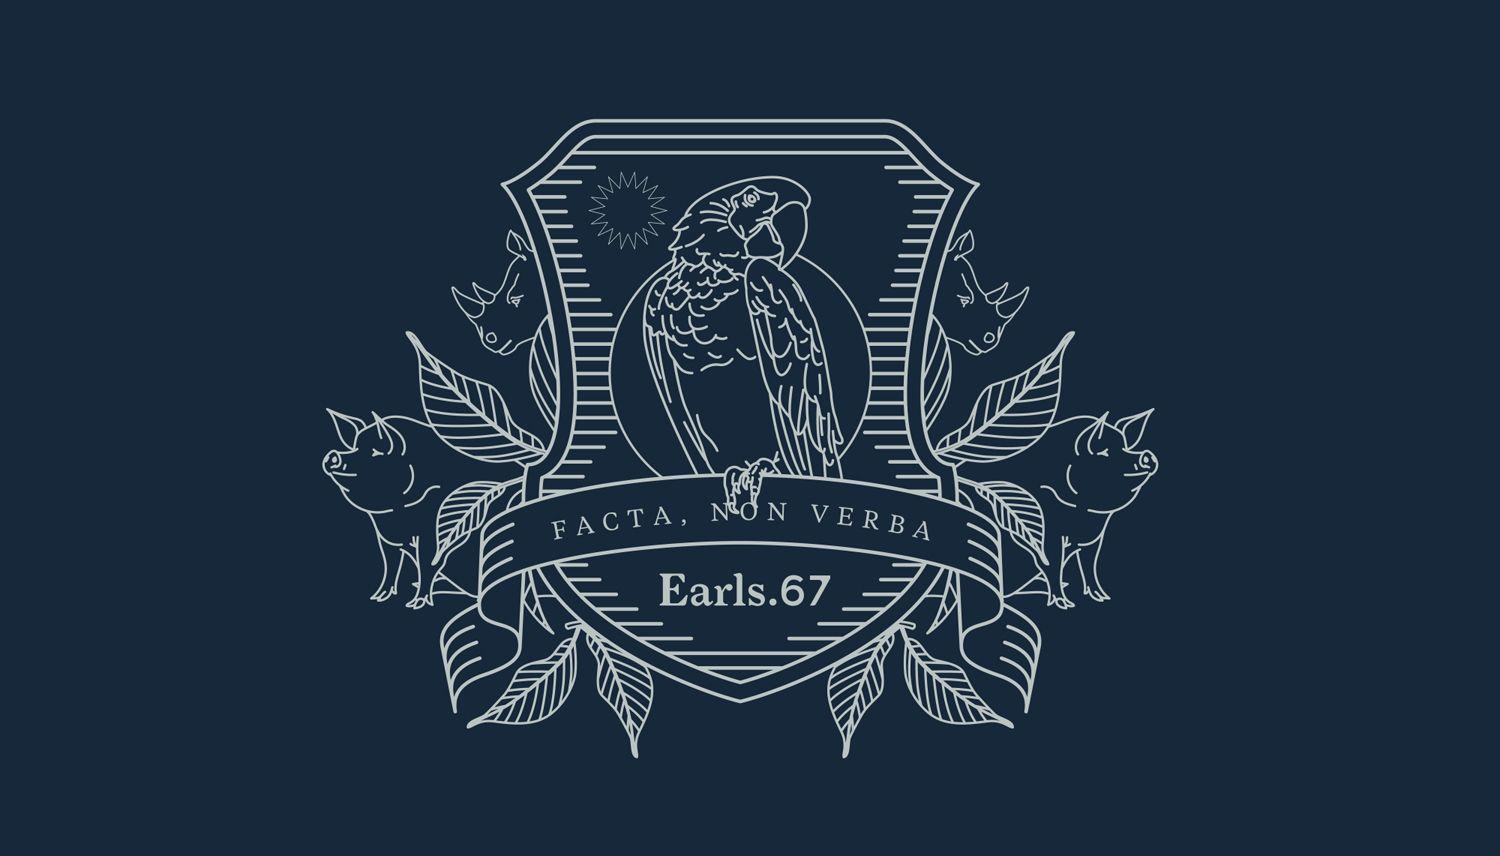 Earl's Logo - New Brand Identity for Earls.67 by Glasfurd & Walker